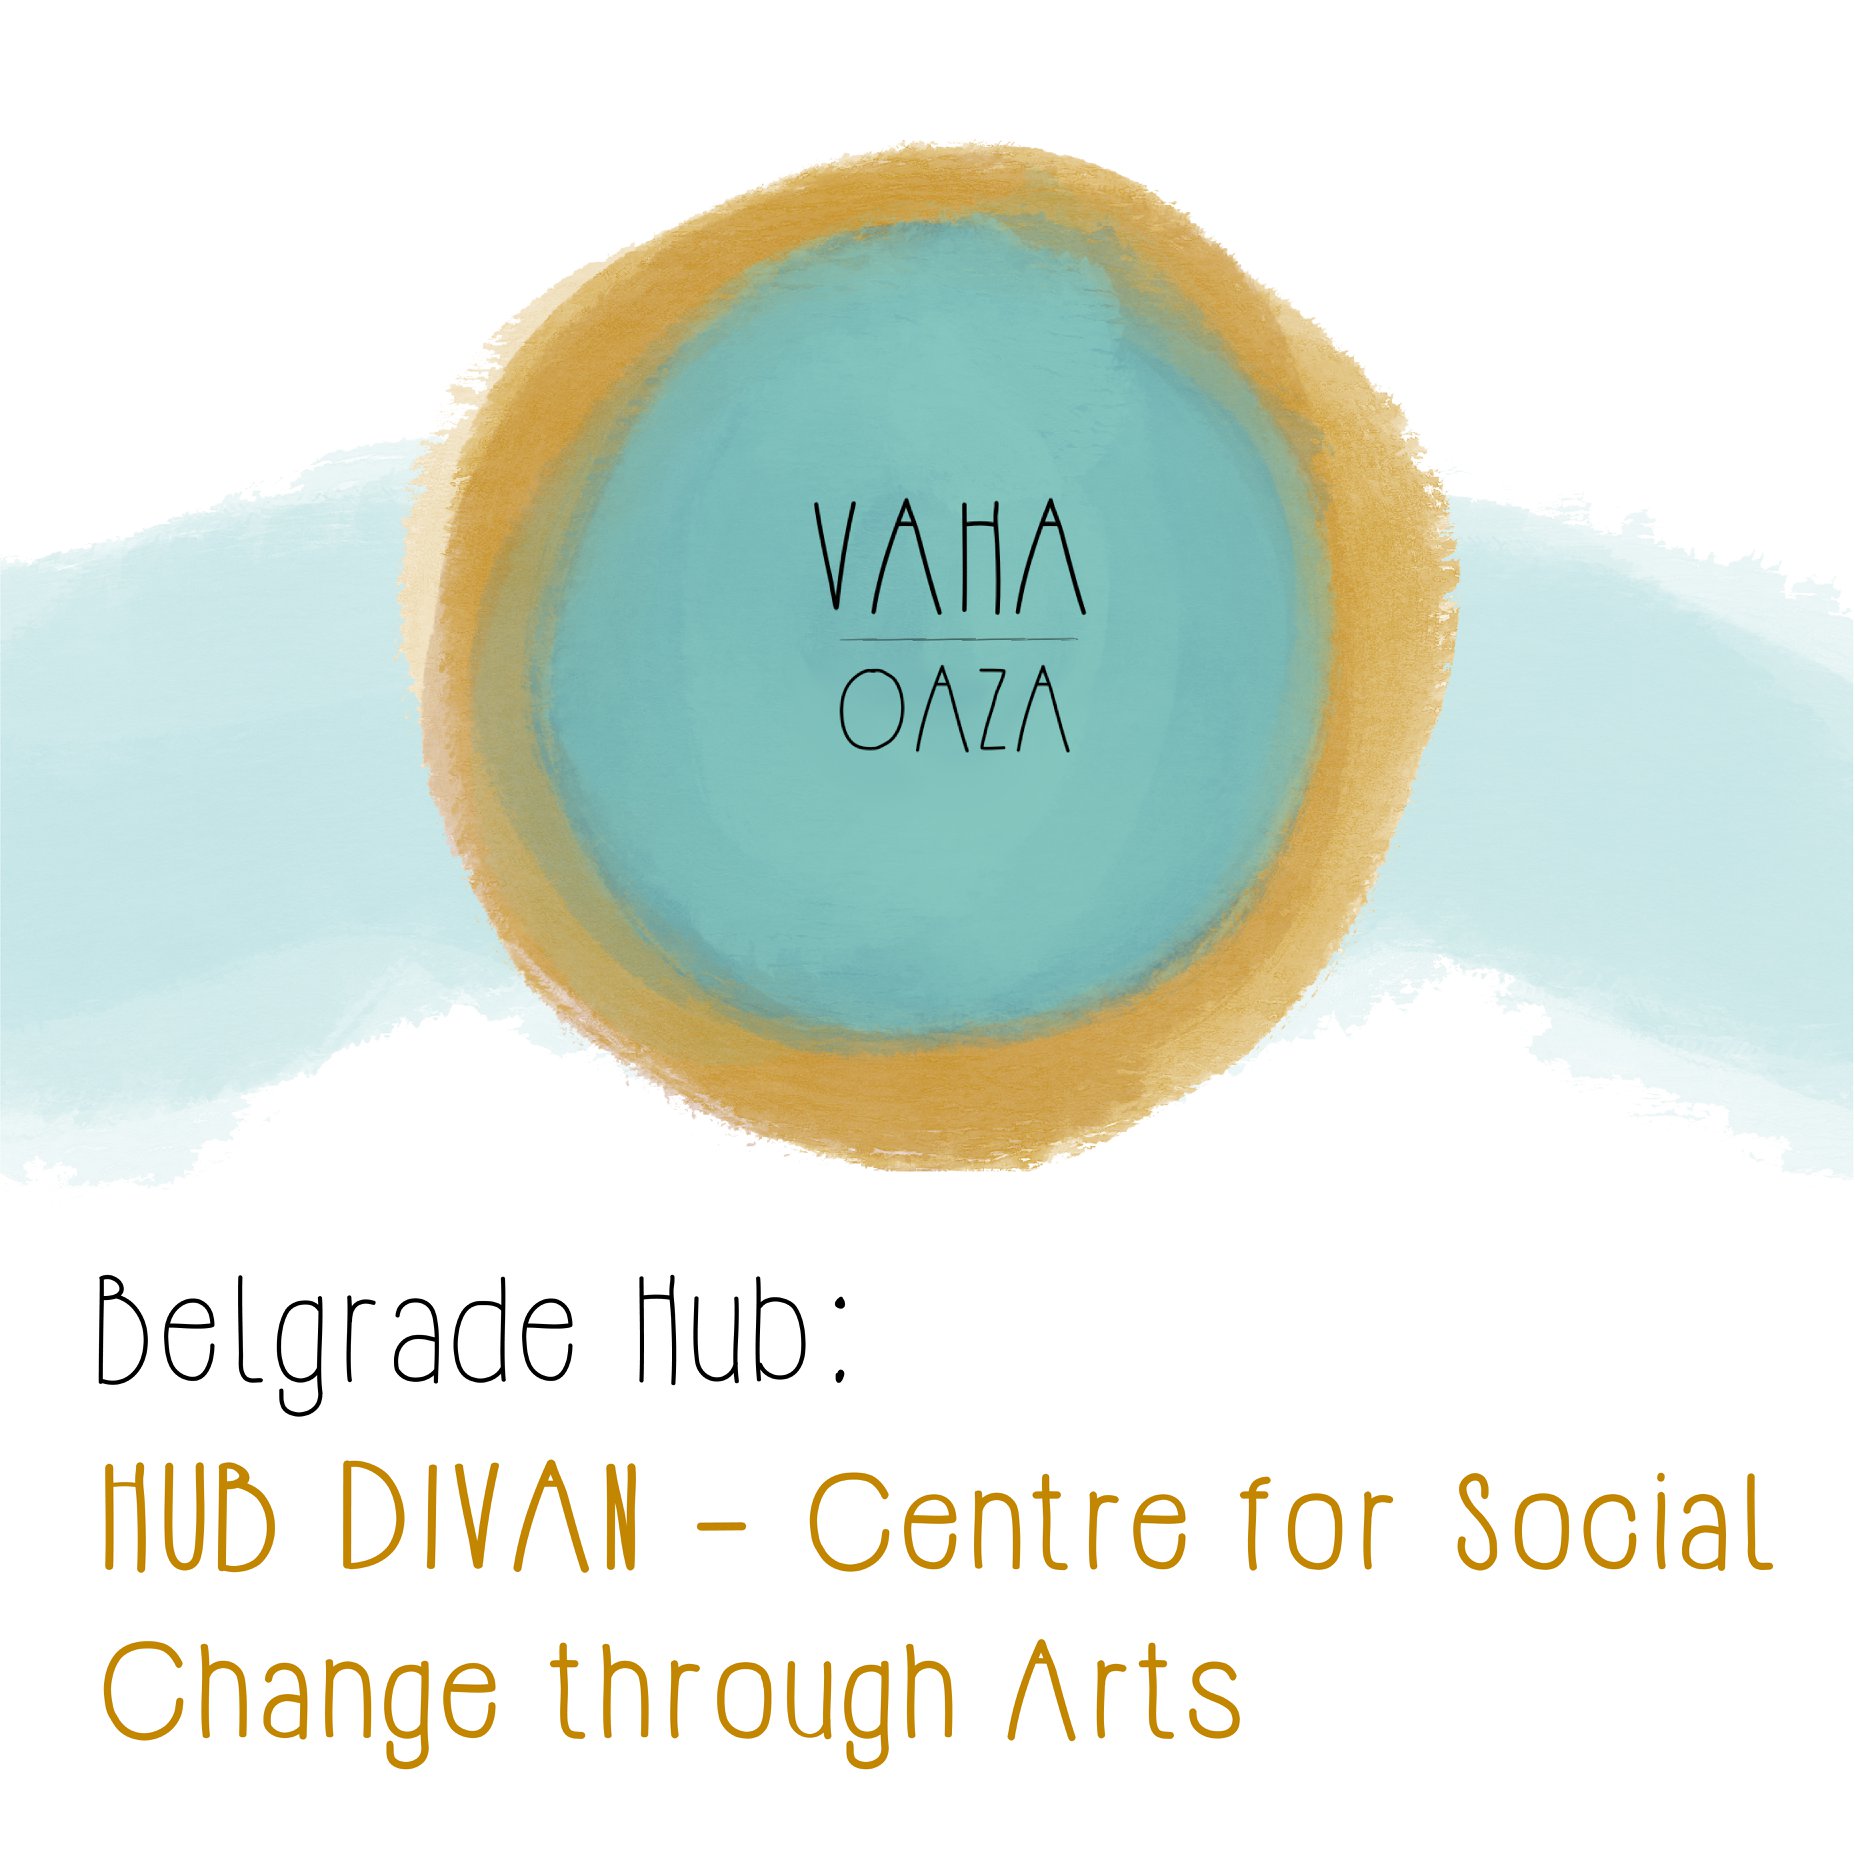 HUB DIVAN – mesto okupljanja, komunikacije i razmene za ljude koji rade na socijalnoj promeni u zajednici